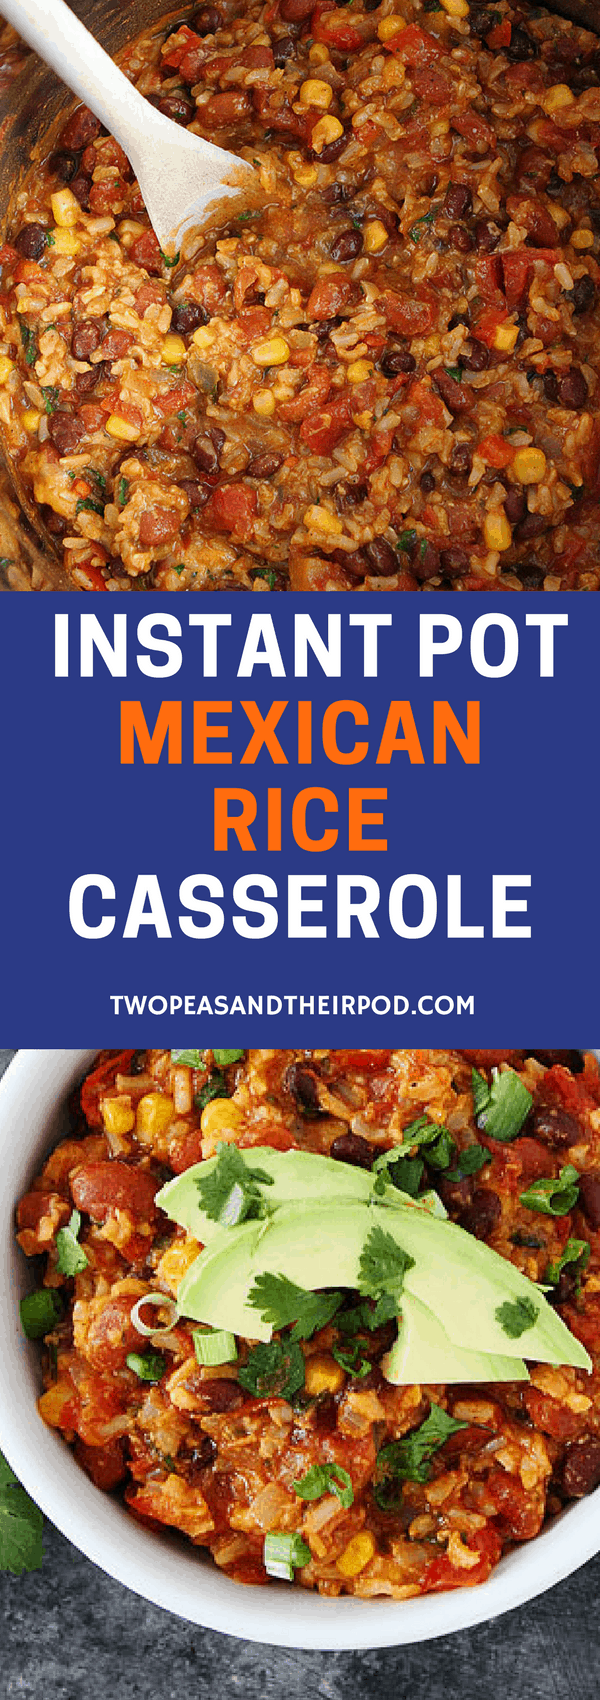 Mexican Rice Casserole Recipe